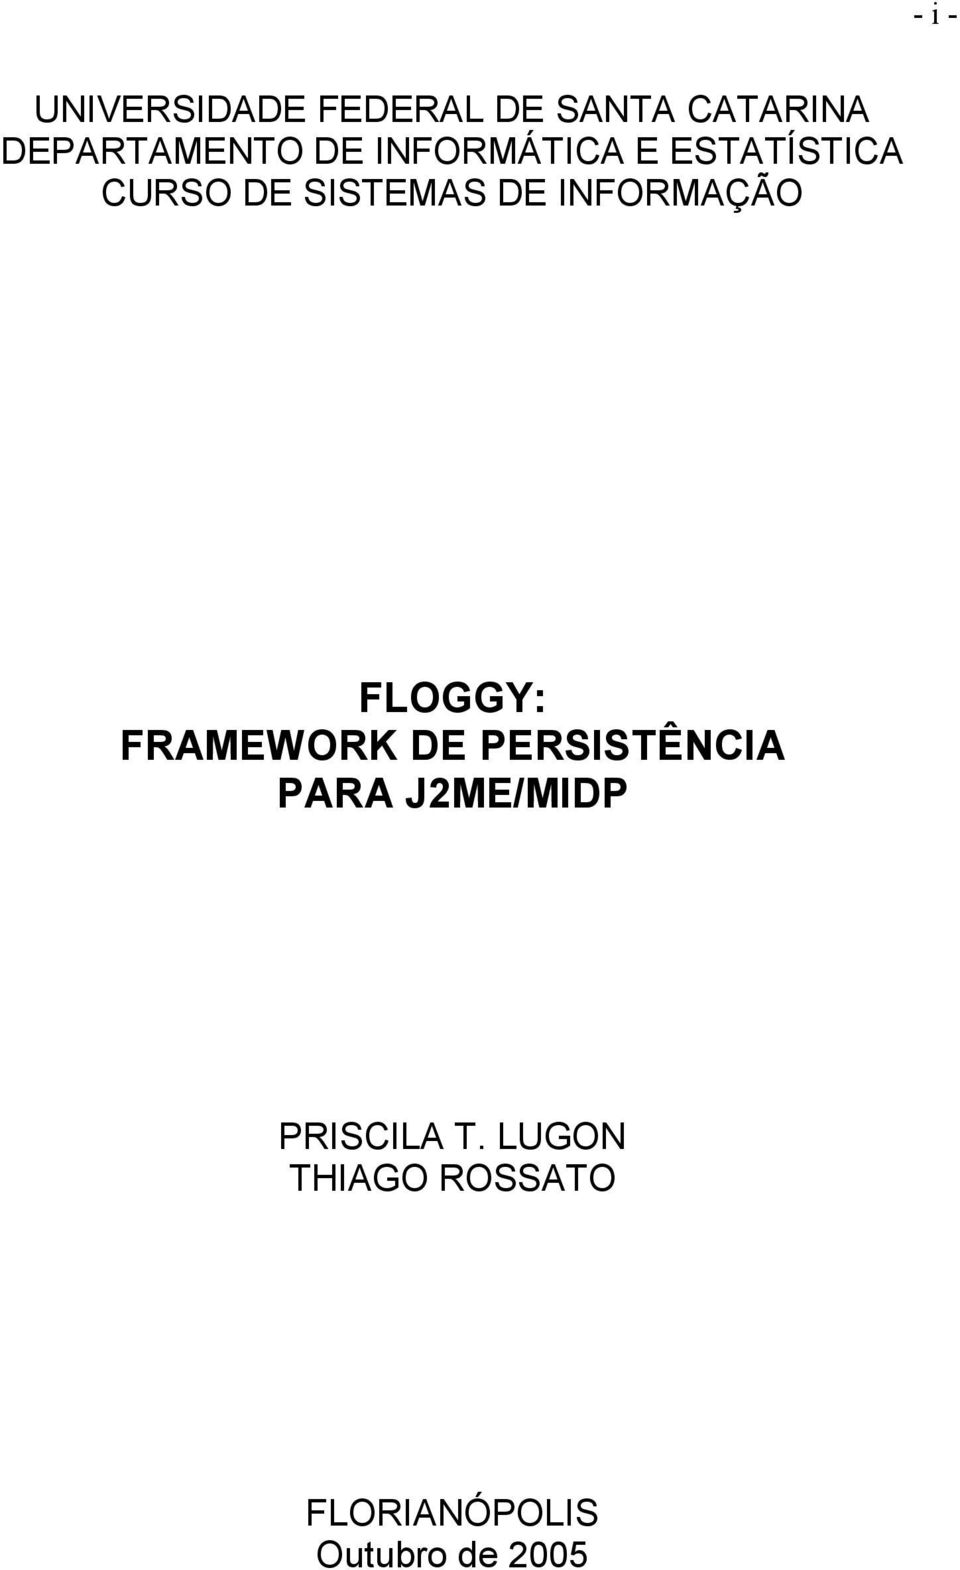 INFORMAÇÃO FLOGGY: FRAMEWORK DE PERSISTÊNCIA PARA